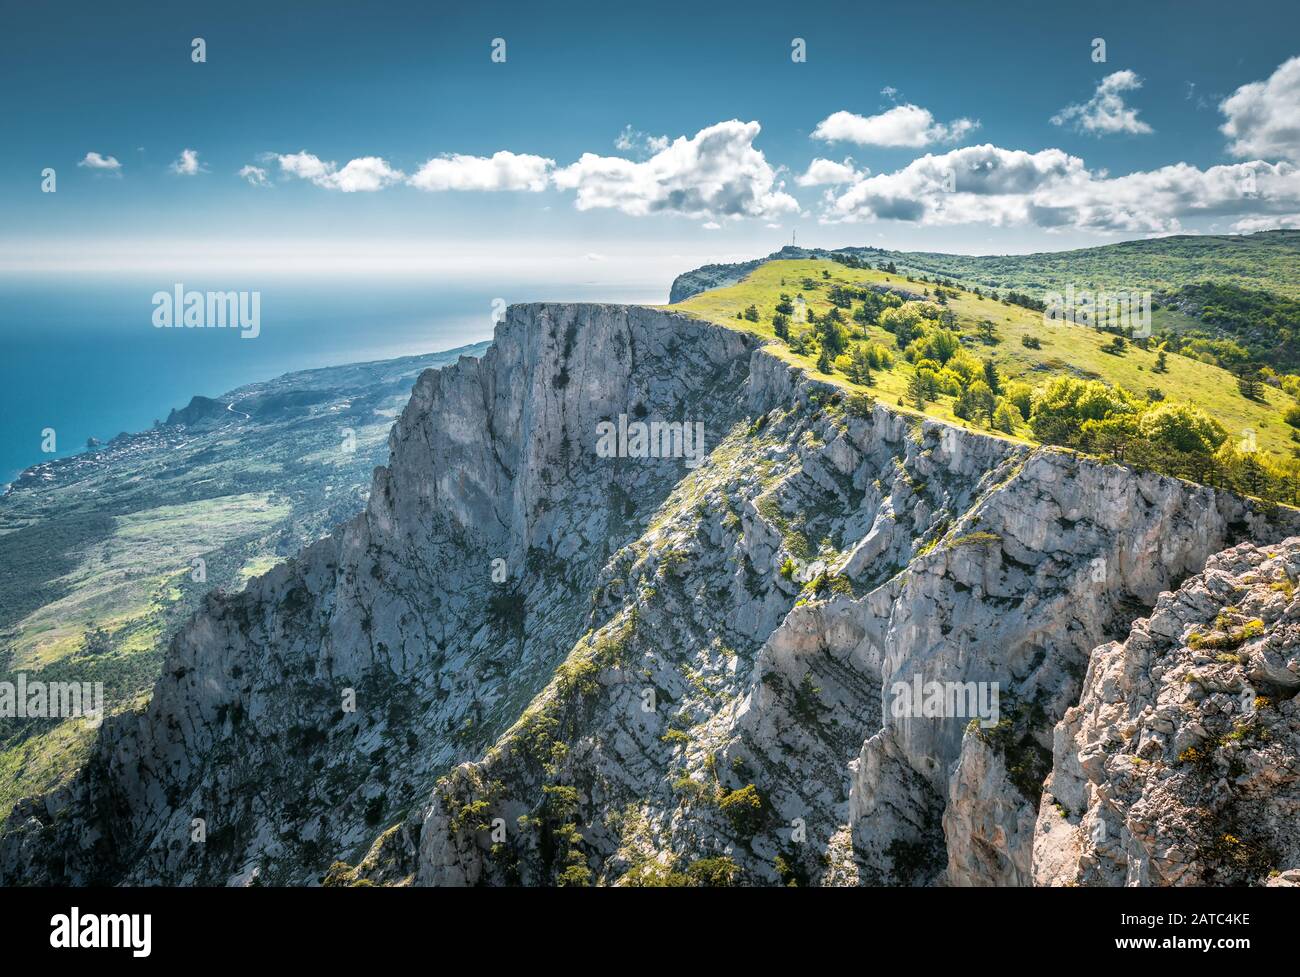 Der Berg Ai-Petri über dem Schwarzen Meer auf der Krim, Russland. Ai-Petri ist eines der höchsten Berge der Krim und Touristenattraktion. Stockfoto